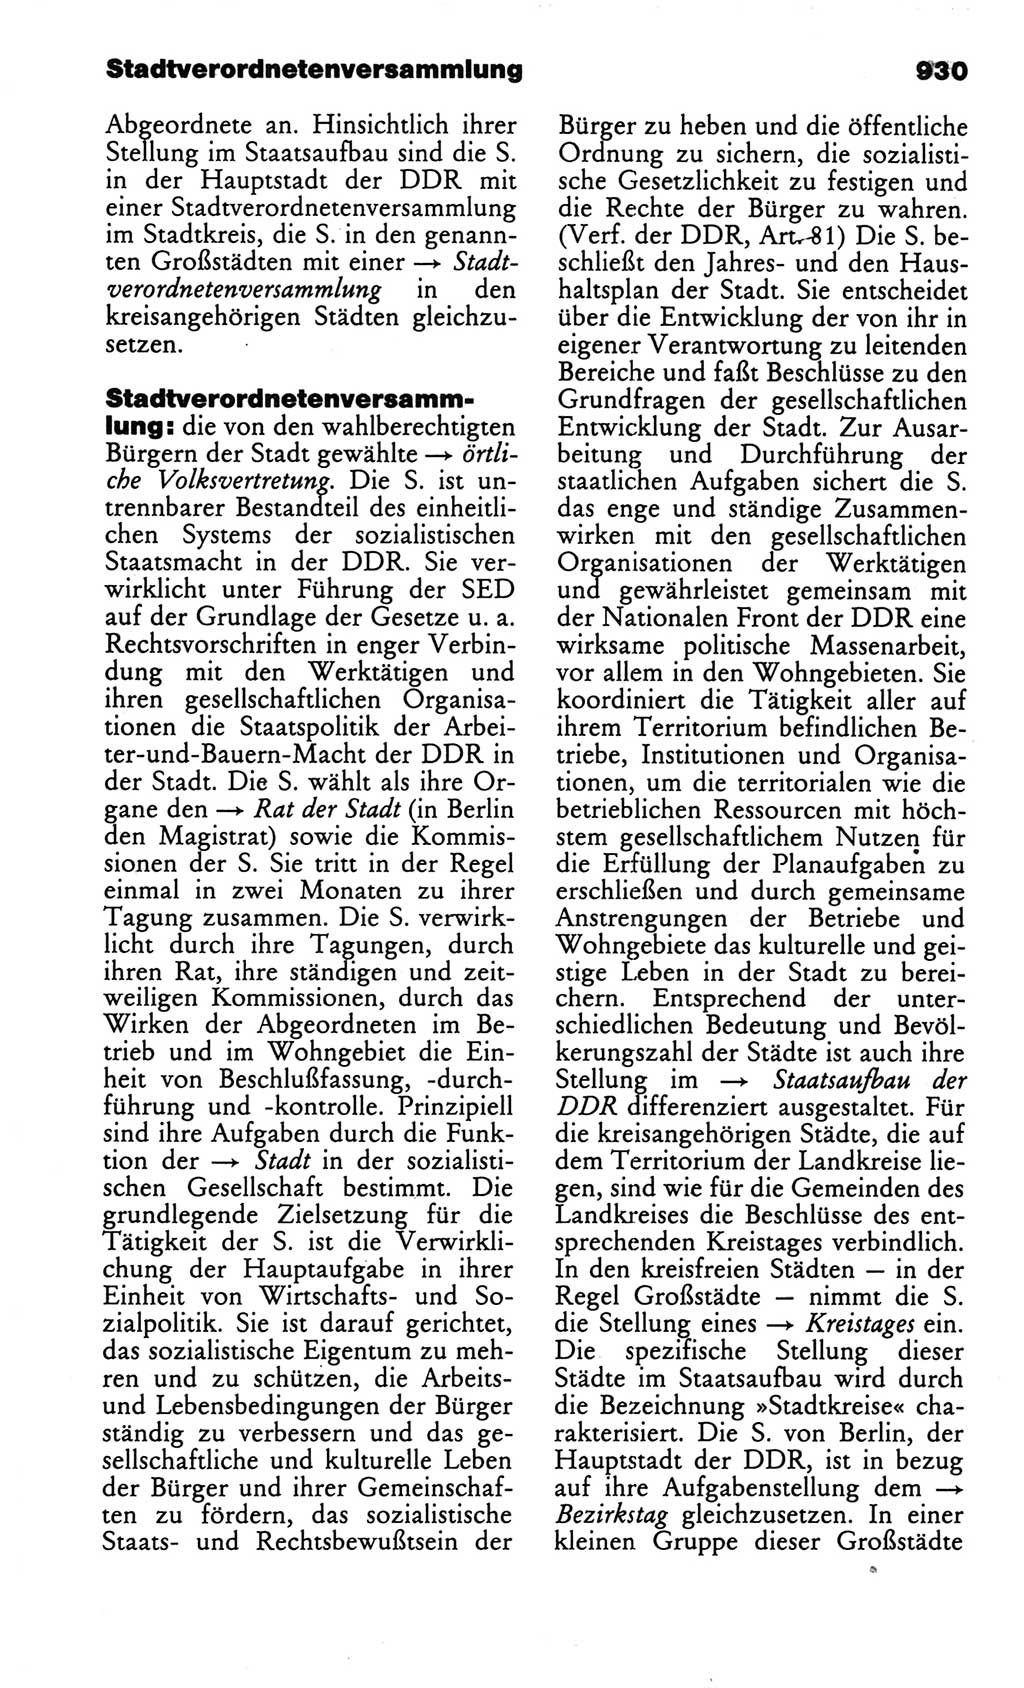 Kleines politisches Wörterbuch [Deutsche Demokratische Republik (DDR)] 1986, Seite 930 (Kl. pol. Wb. DDR 1986, S. 930)